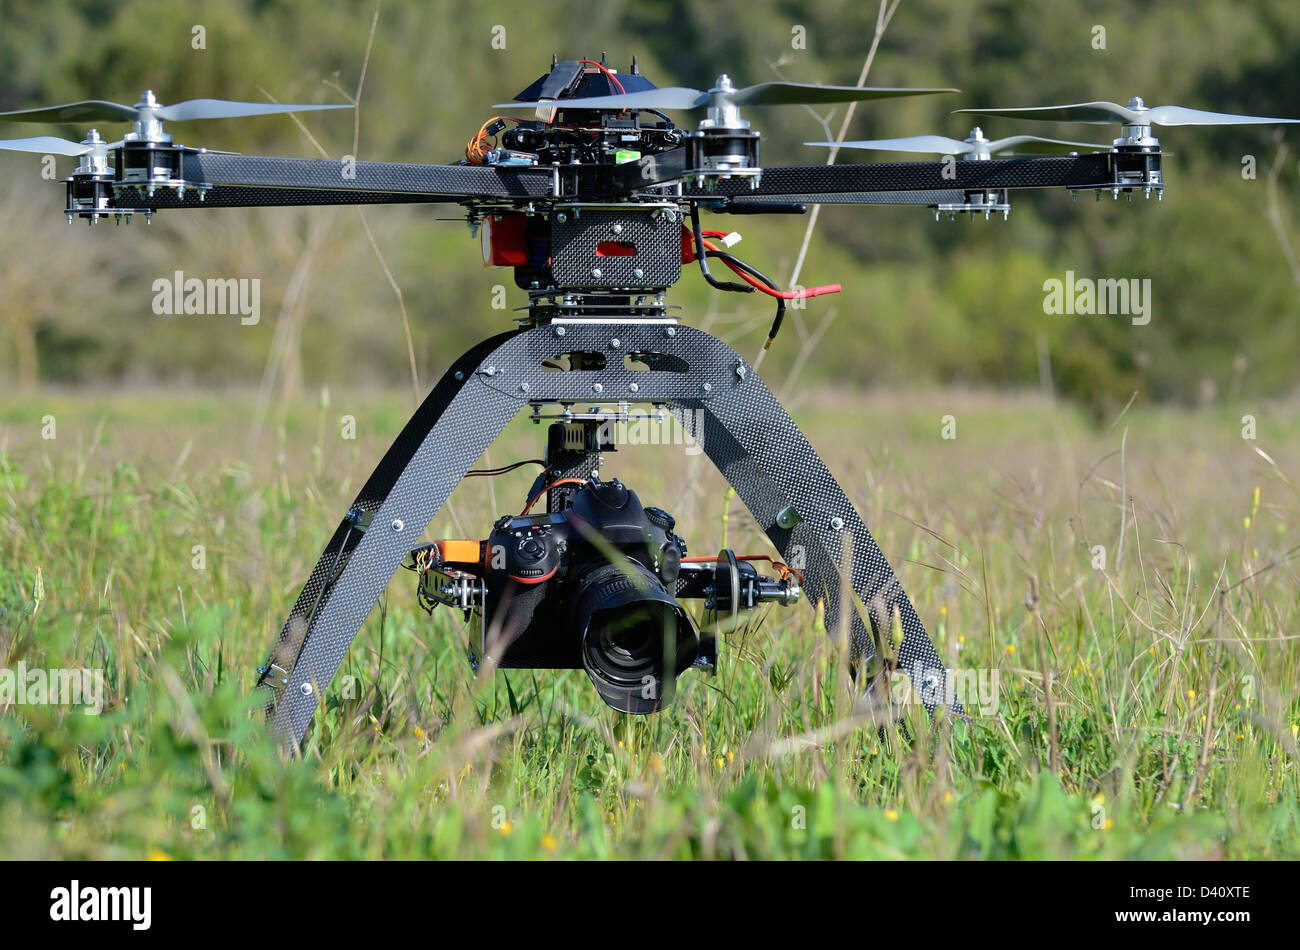 Drone et l'appareil photo numérique sur un drone (UAV ou Drone), avec six rotors, utilisé ici pour la photographie aérienne ou de filmer Banque D'Images